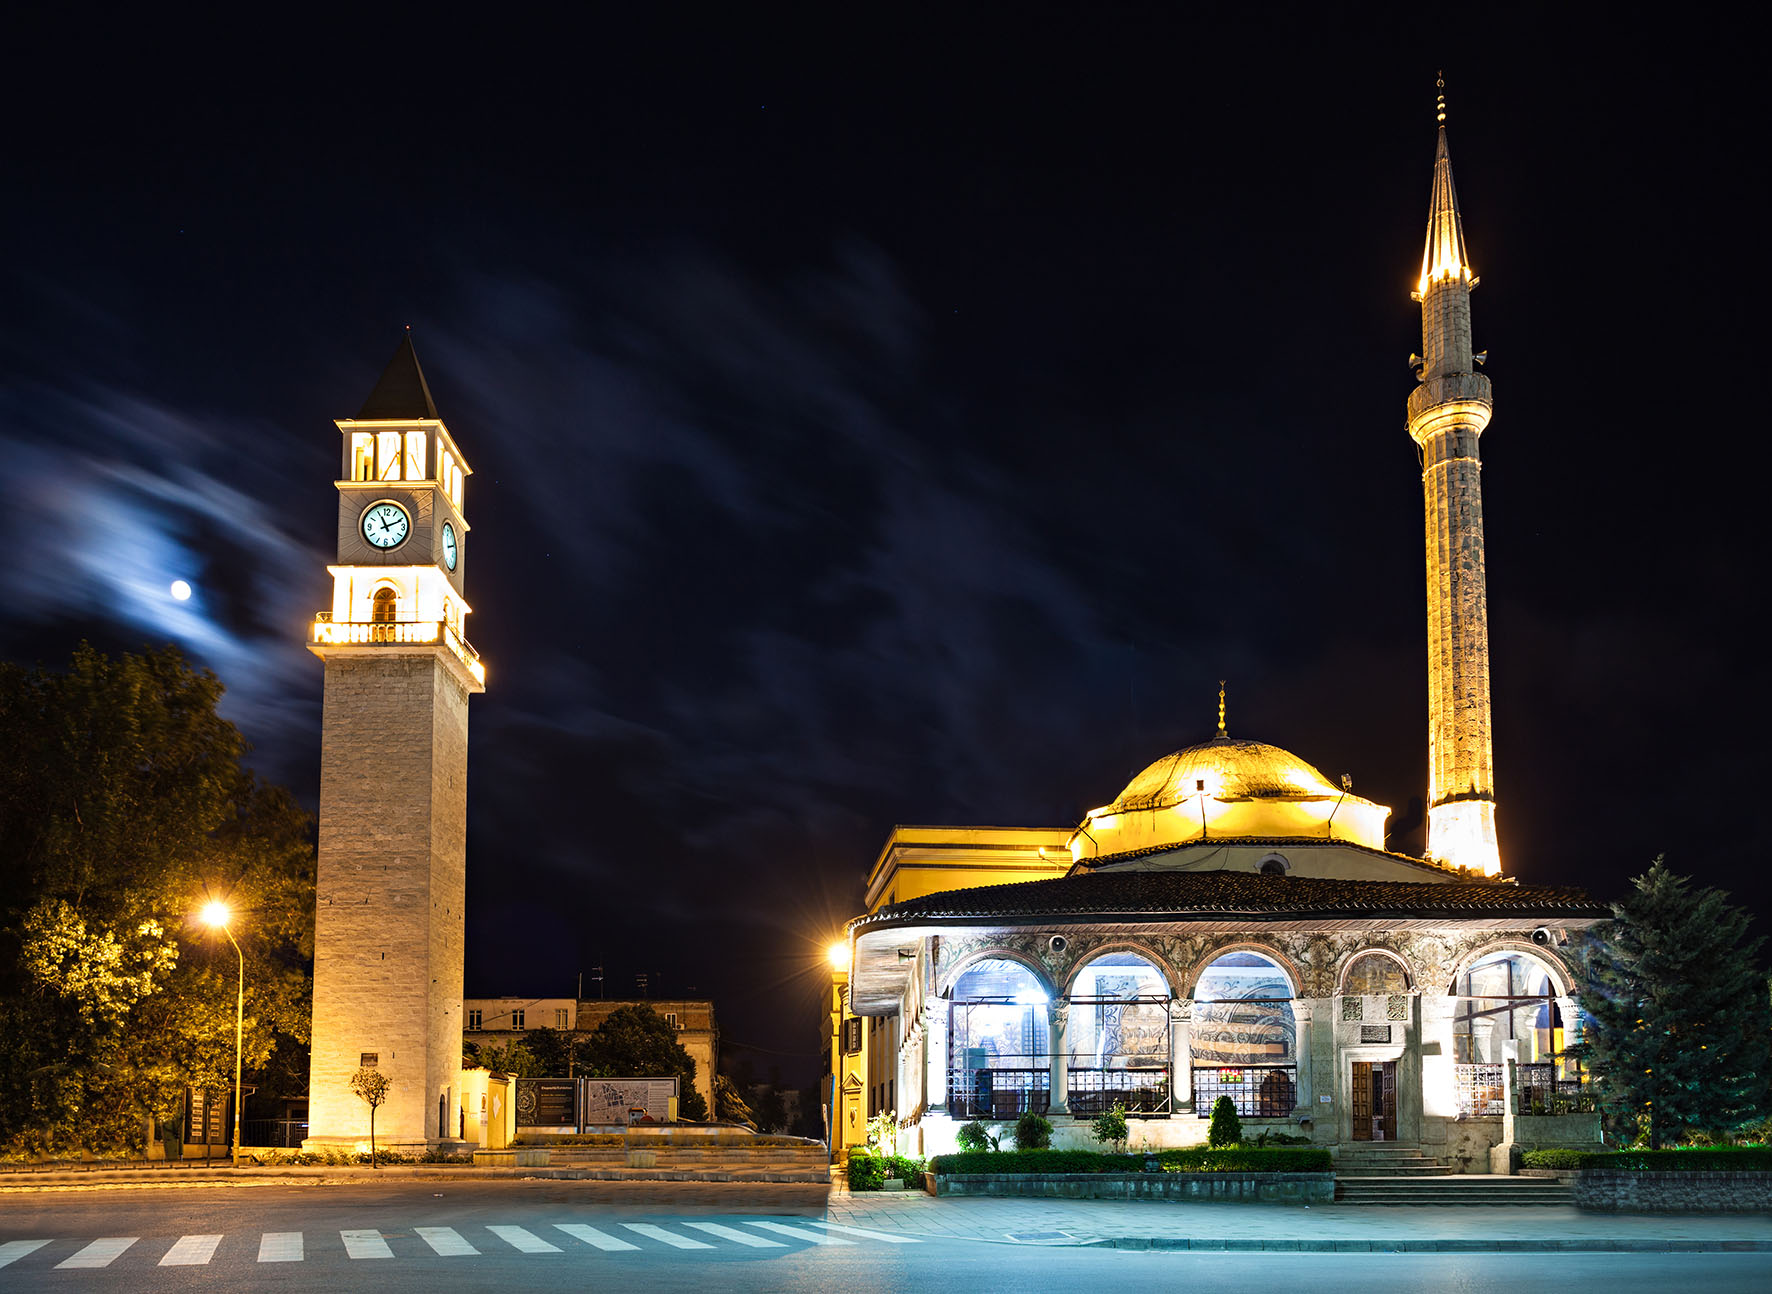 Besimtarët i kërkojnë Komunitetit Mysliman të hapë xhamitë